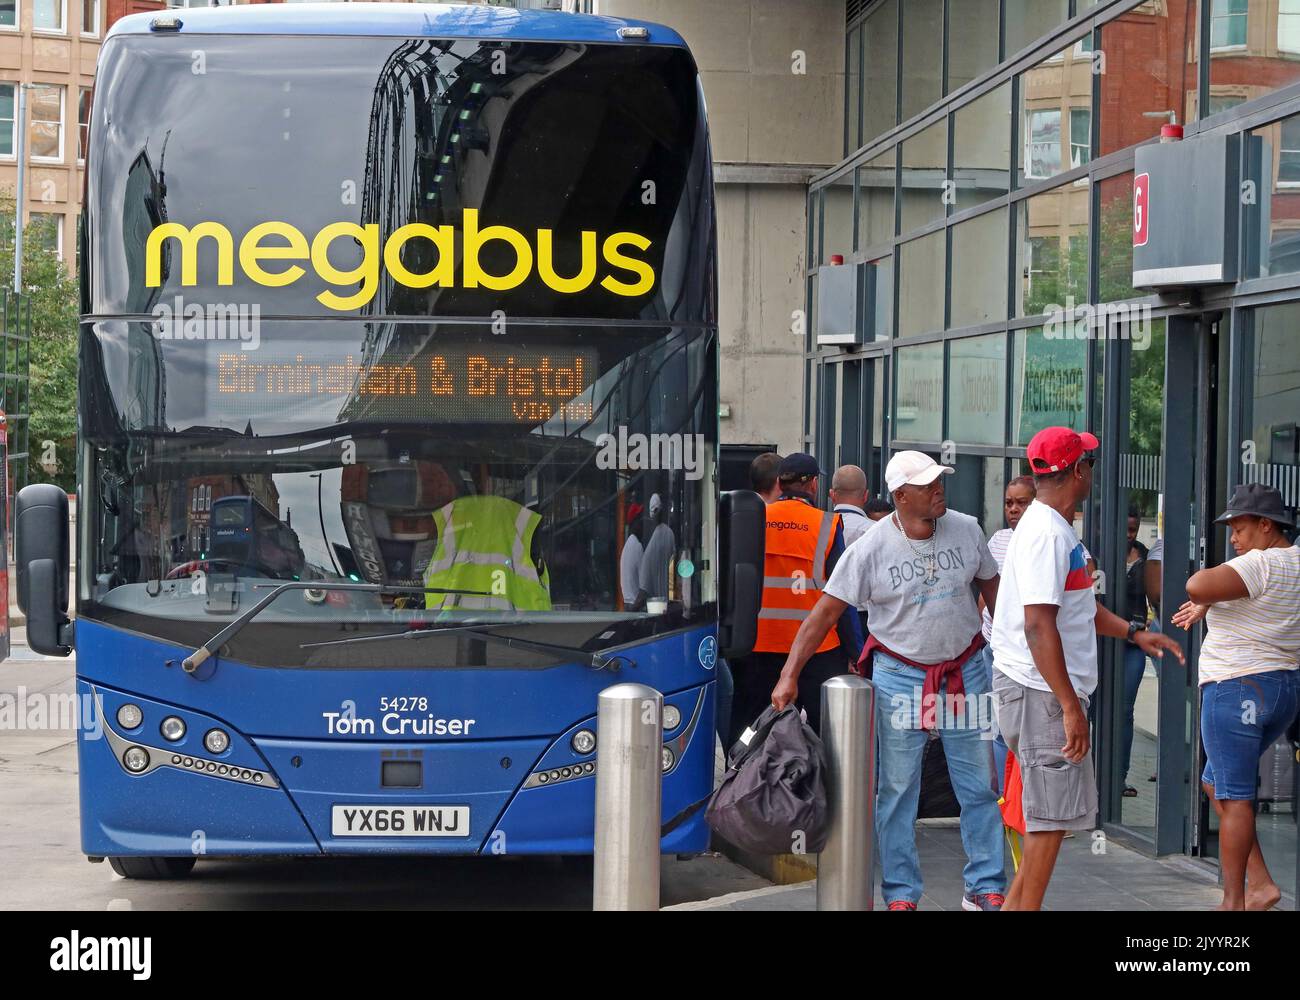 Megabus à Bristol , à Shudehill gare routière et échangeur, Manchester, Angleterre, Royaume-Uni, M4 2AF, Tom Cruiser , YX66 WNJ Banque D'Images